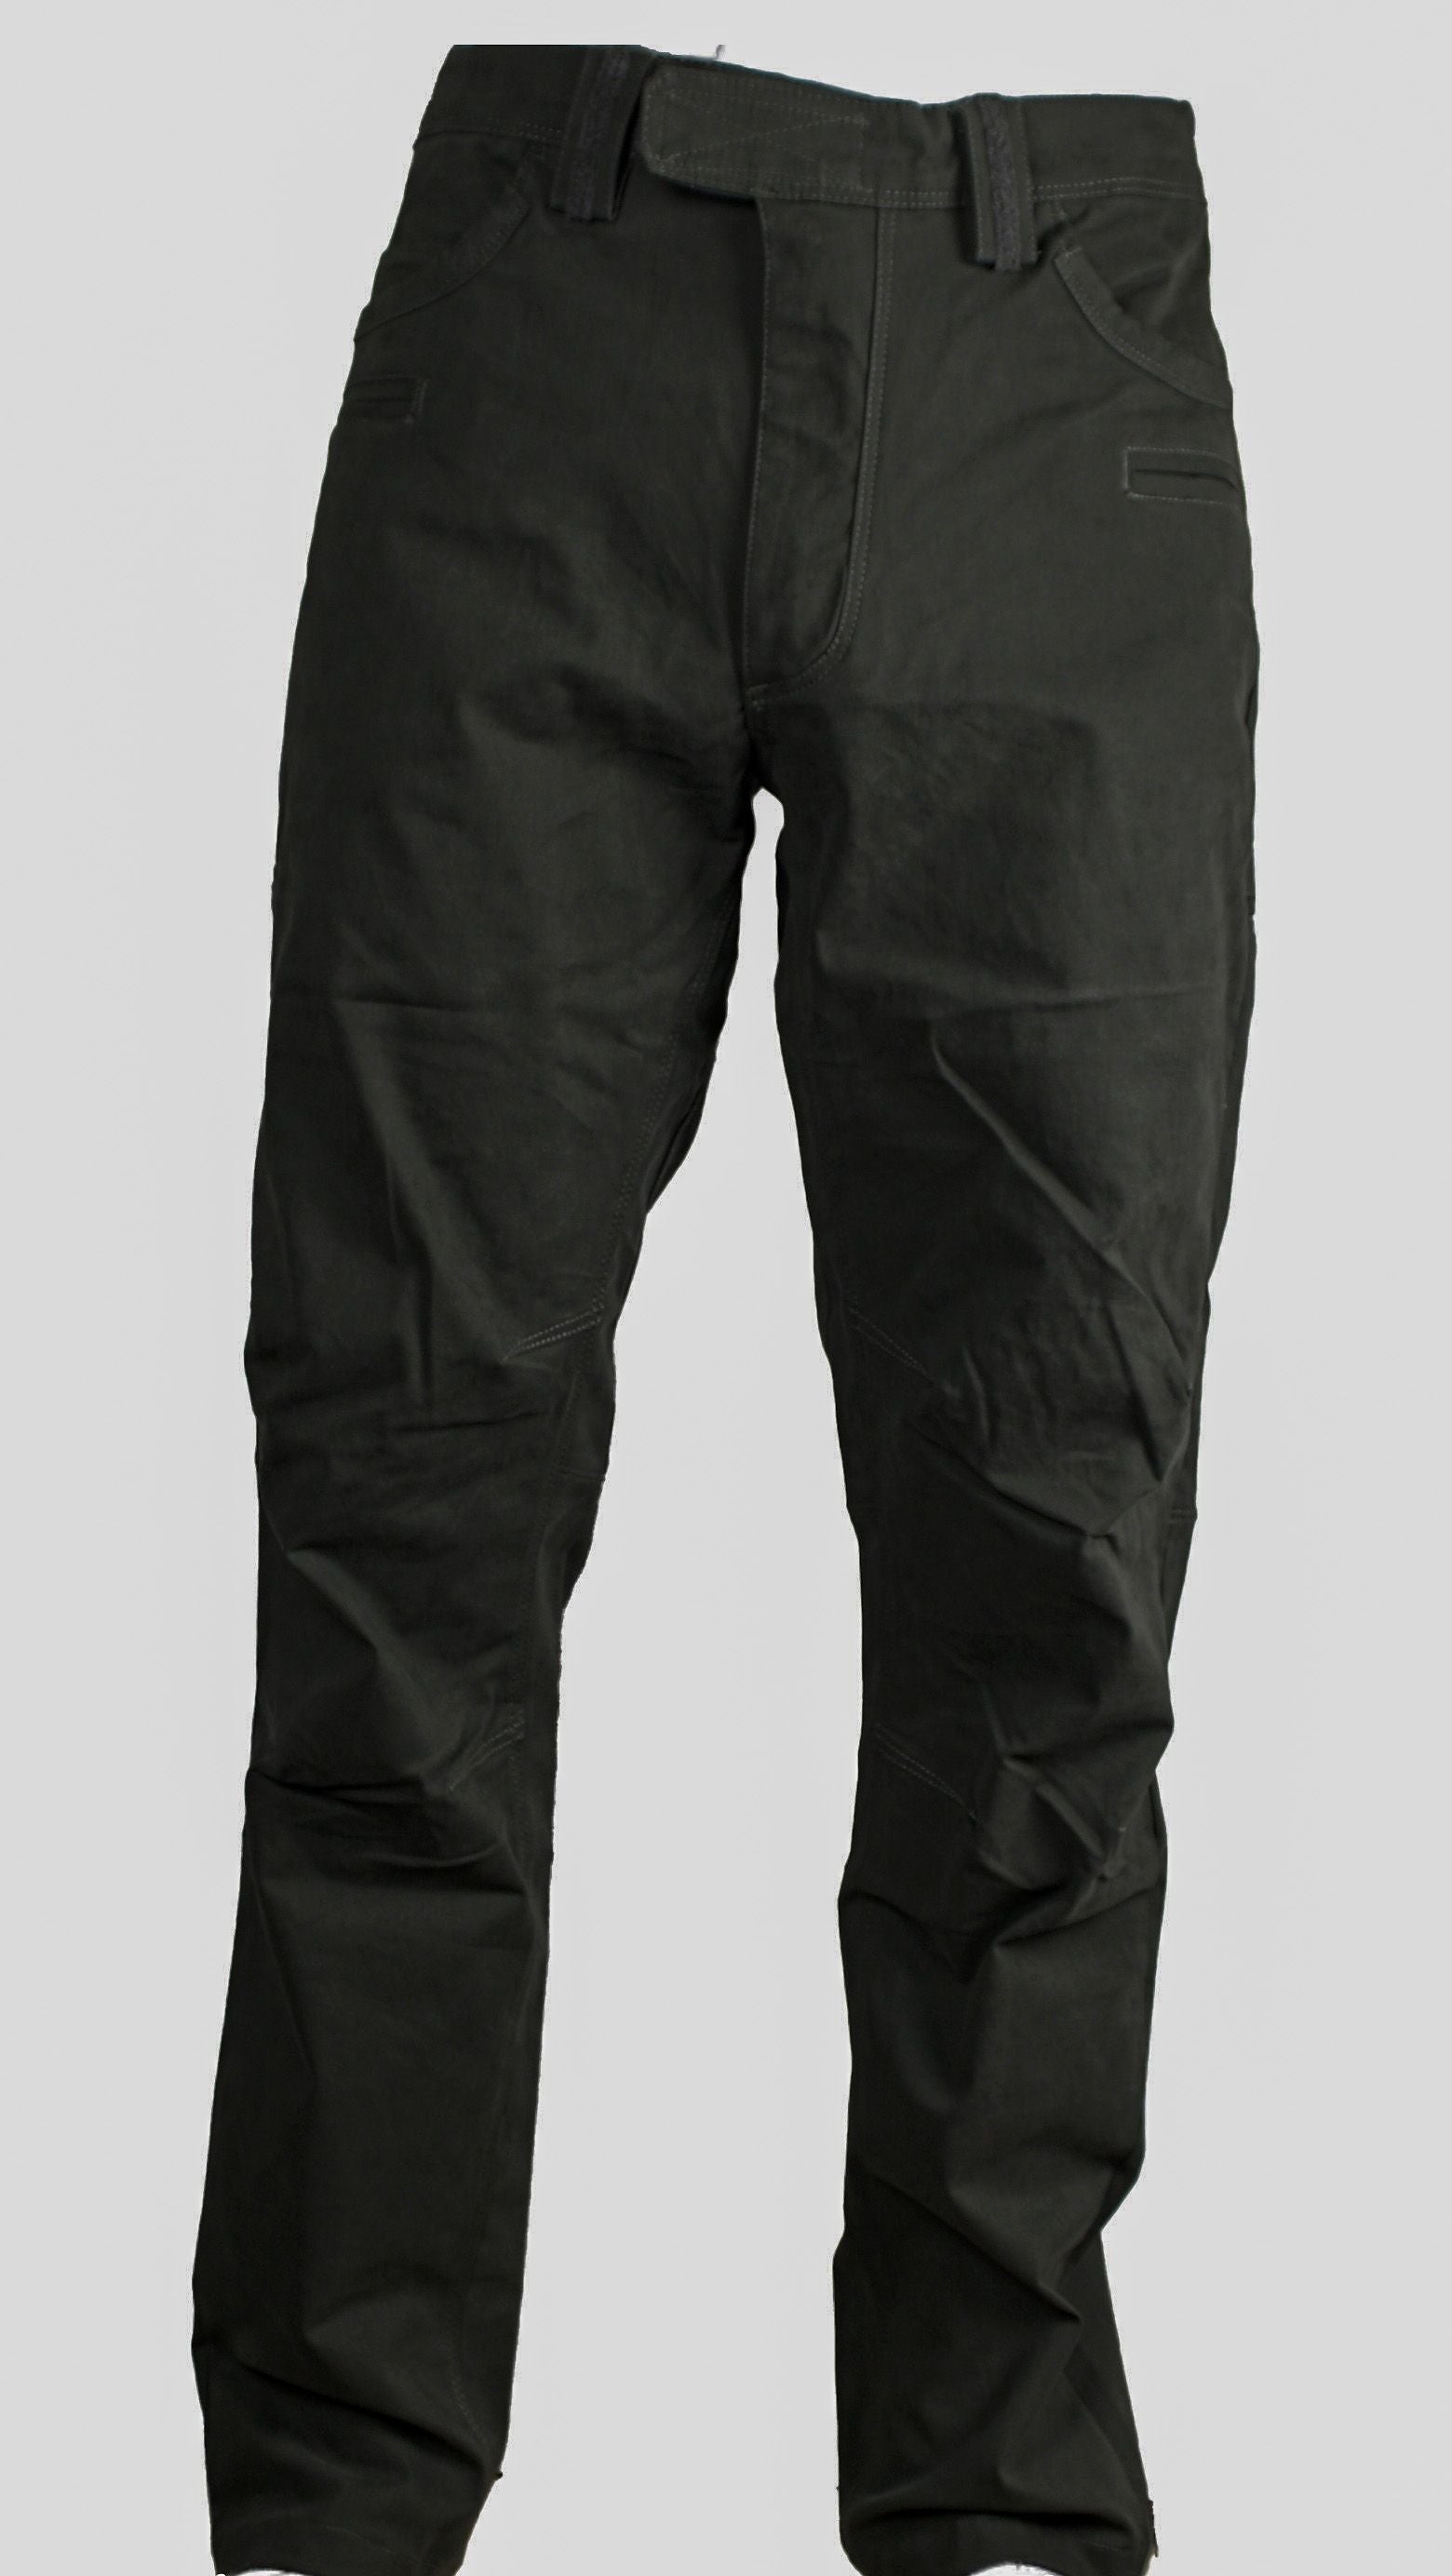 4-14 Ranger Pants - Asphalt Grey